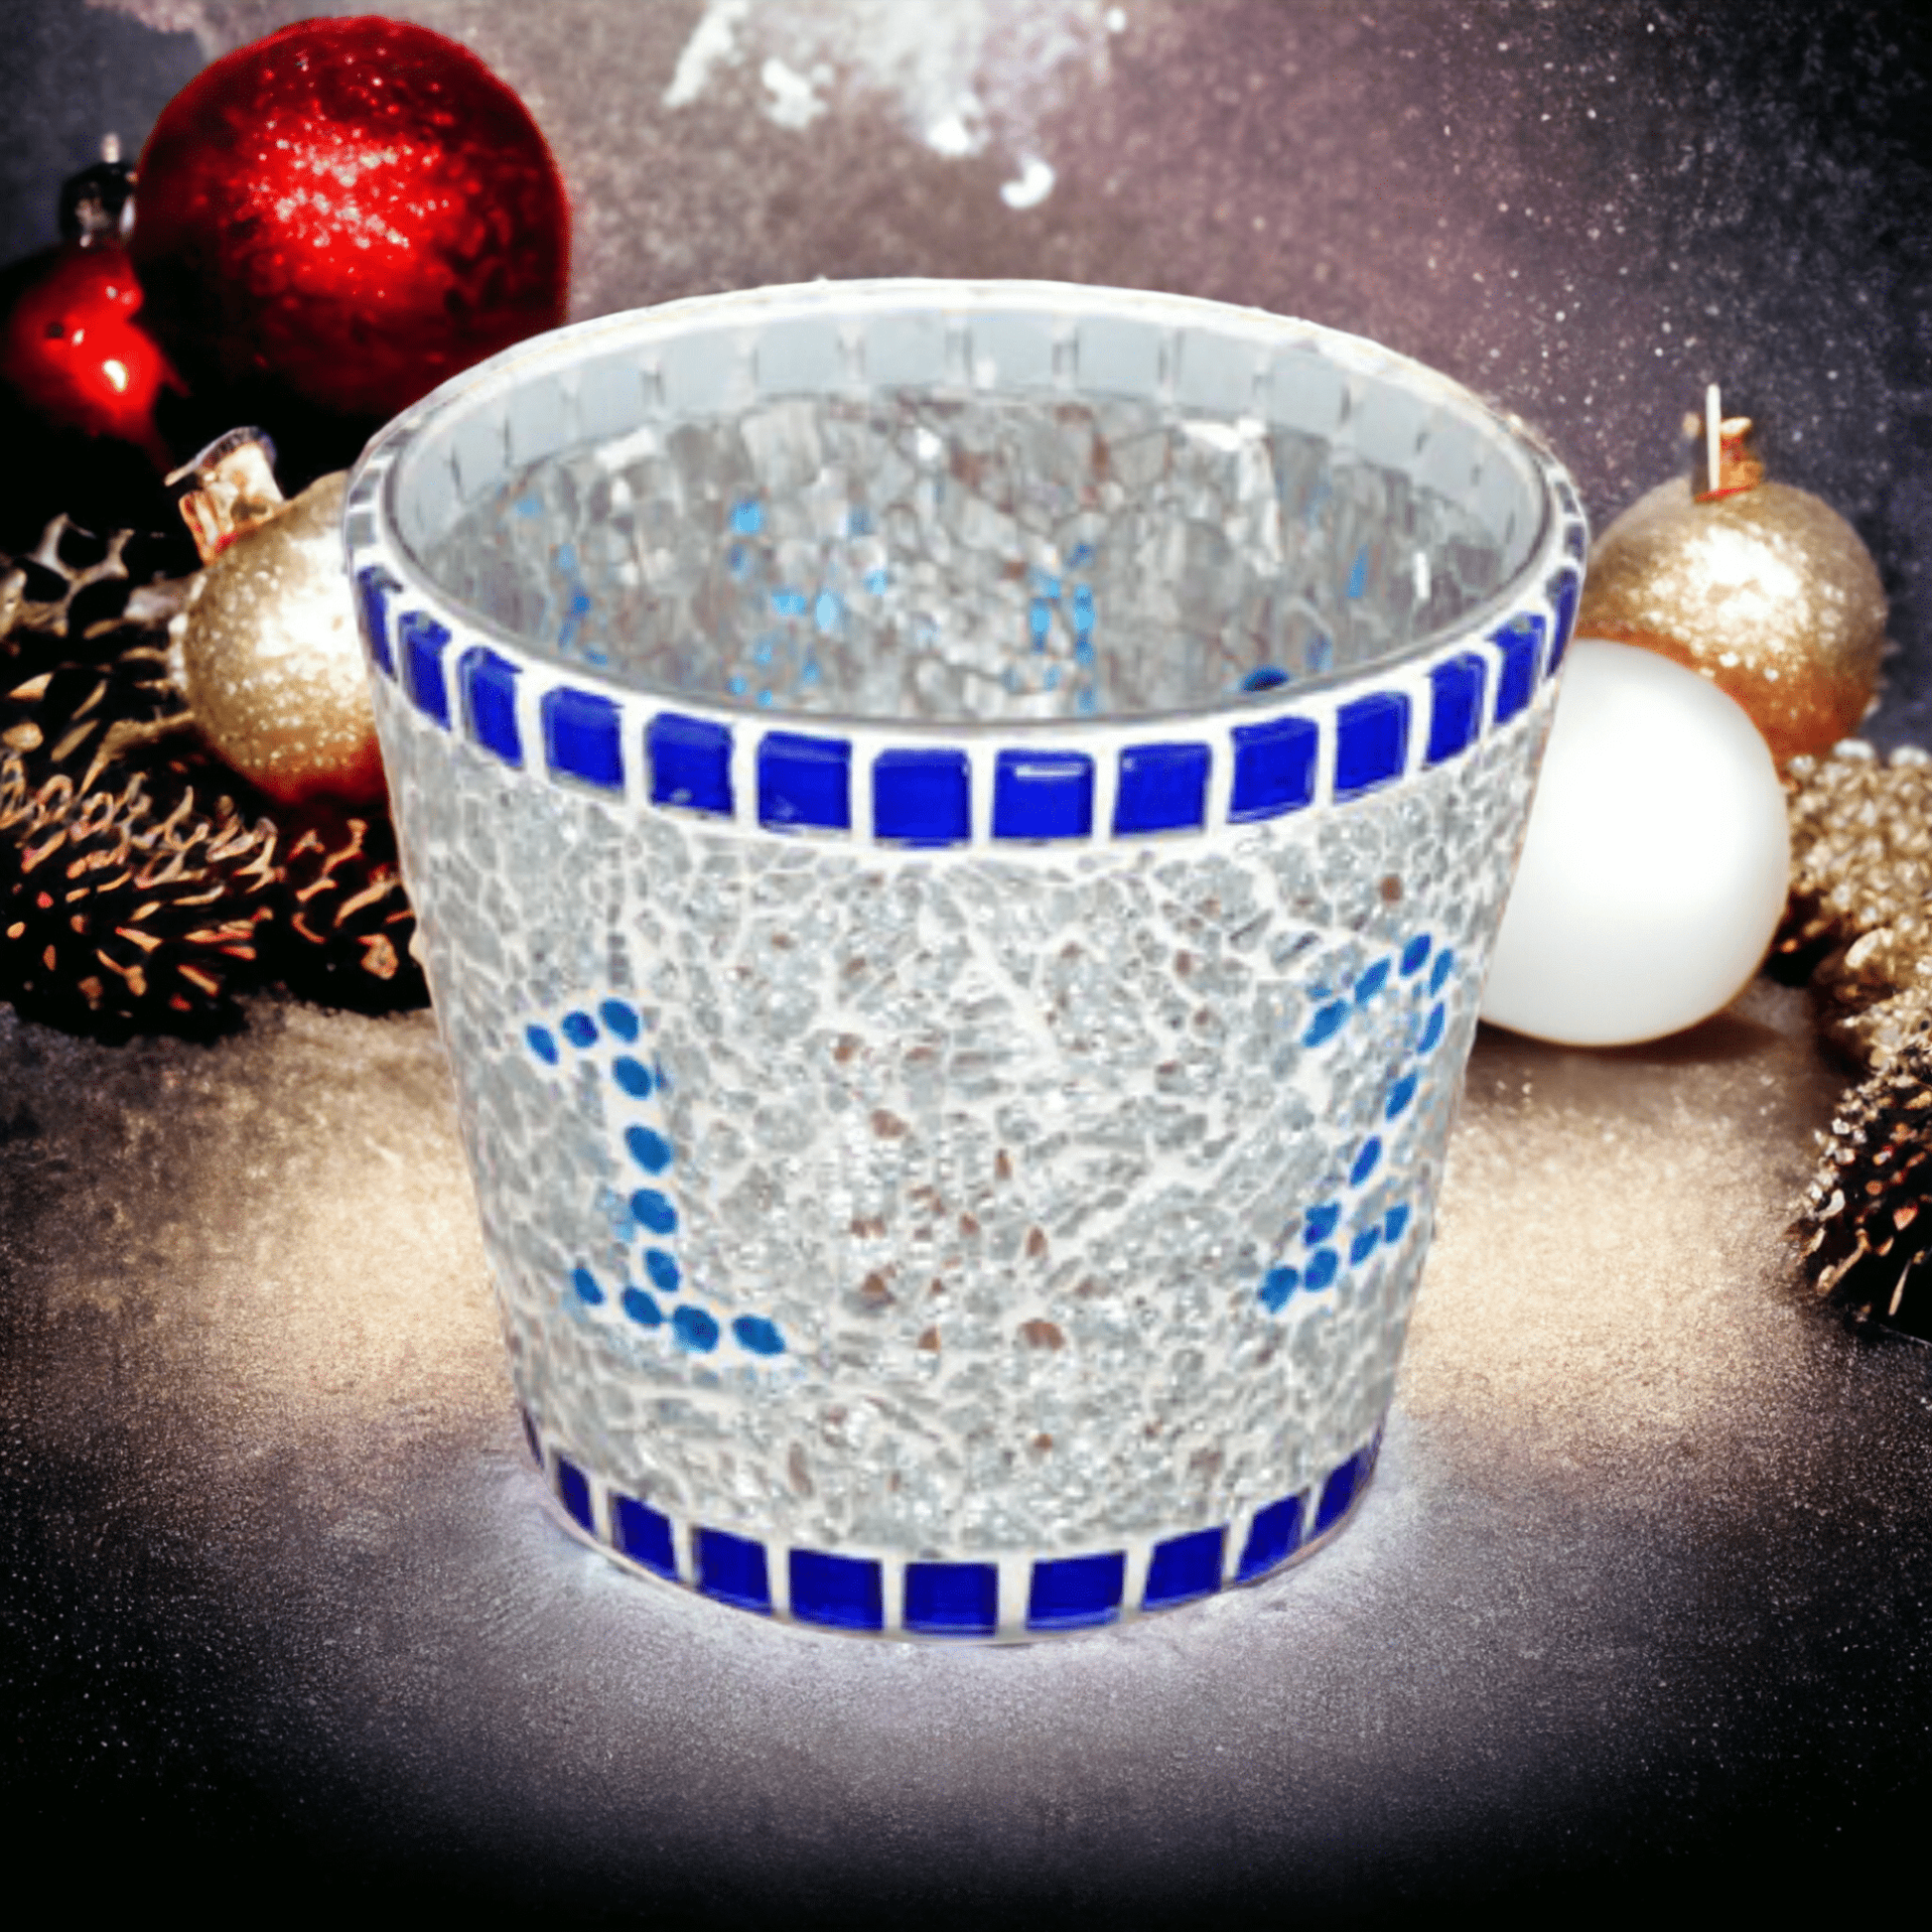 Mosaik Advent Windlicht blau silber 11 cm hoch - handgemacht - Mosaikkasten Advent aus alt mach neu